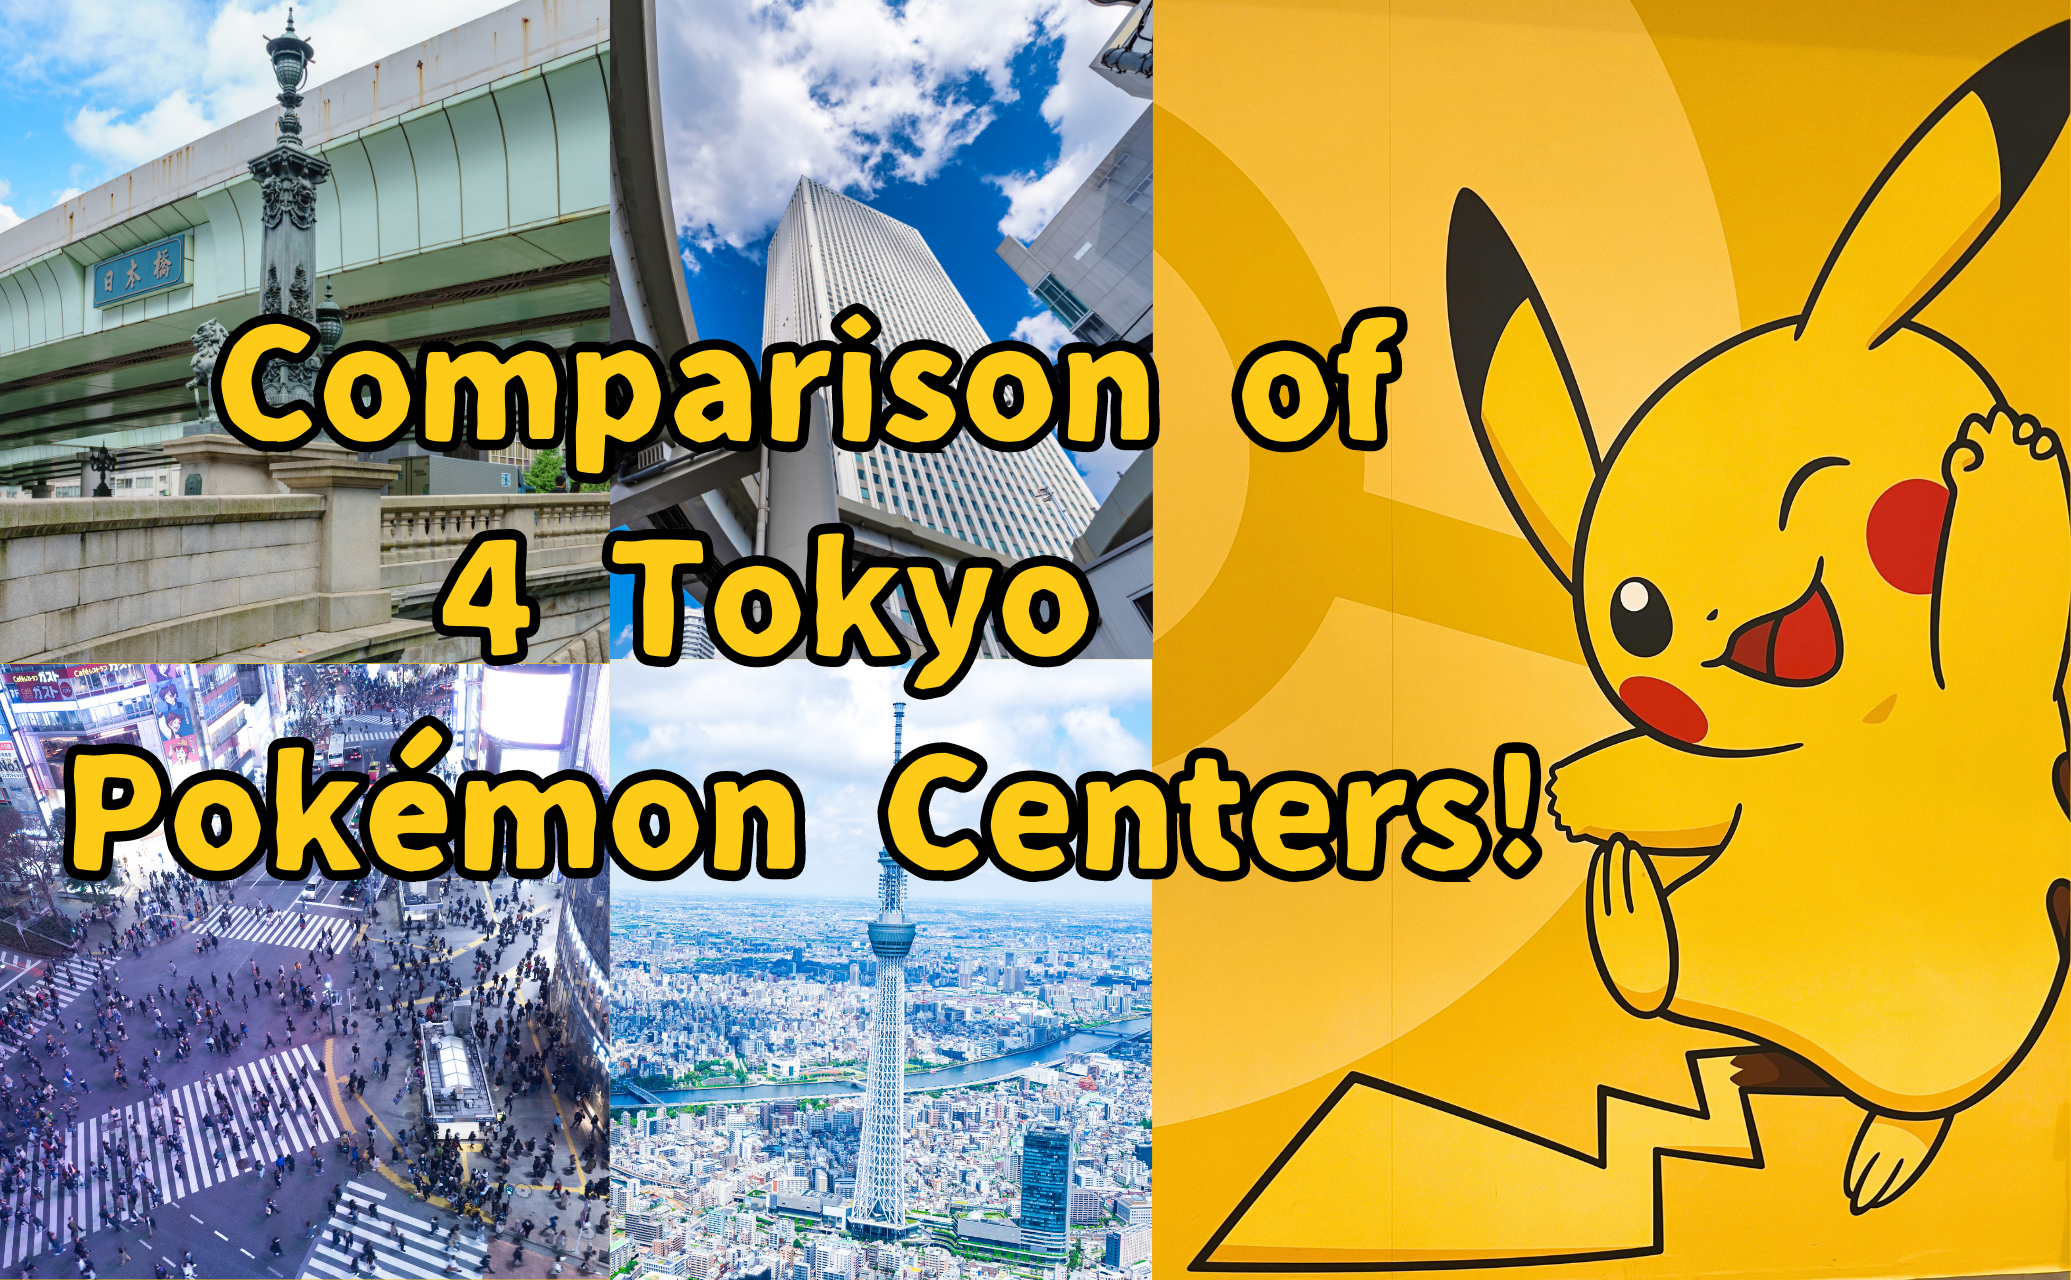 Comparison of 4 Tokyo Pokémon Centers!